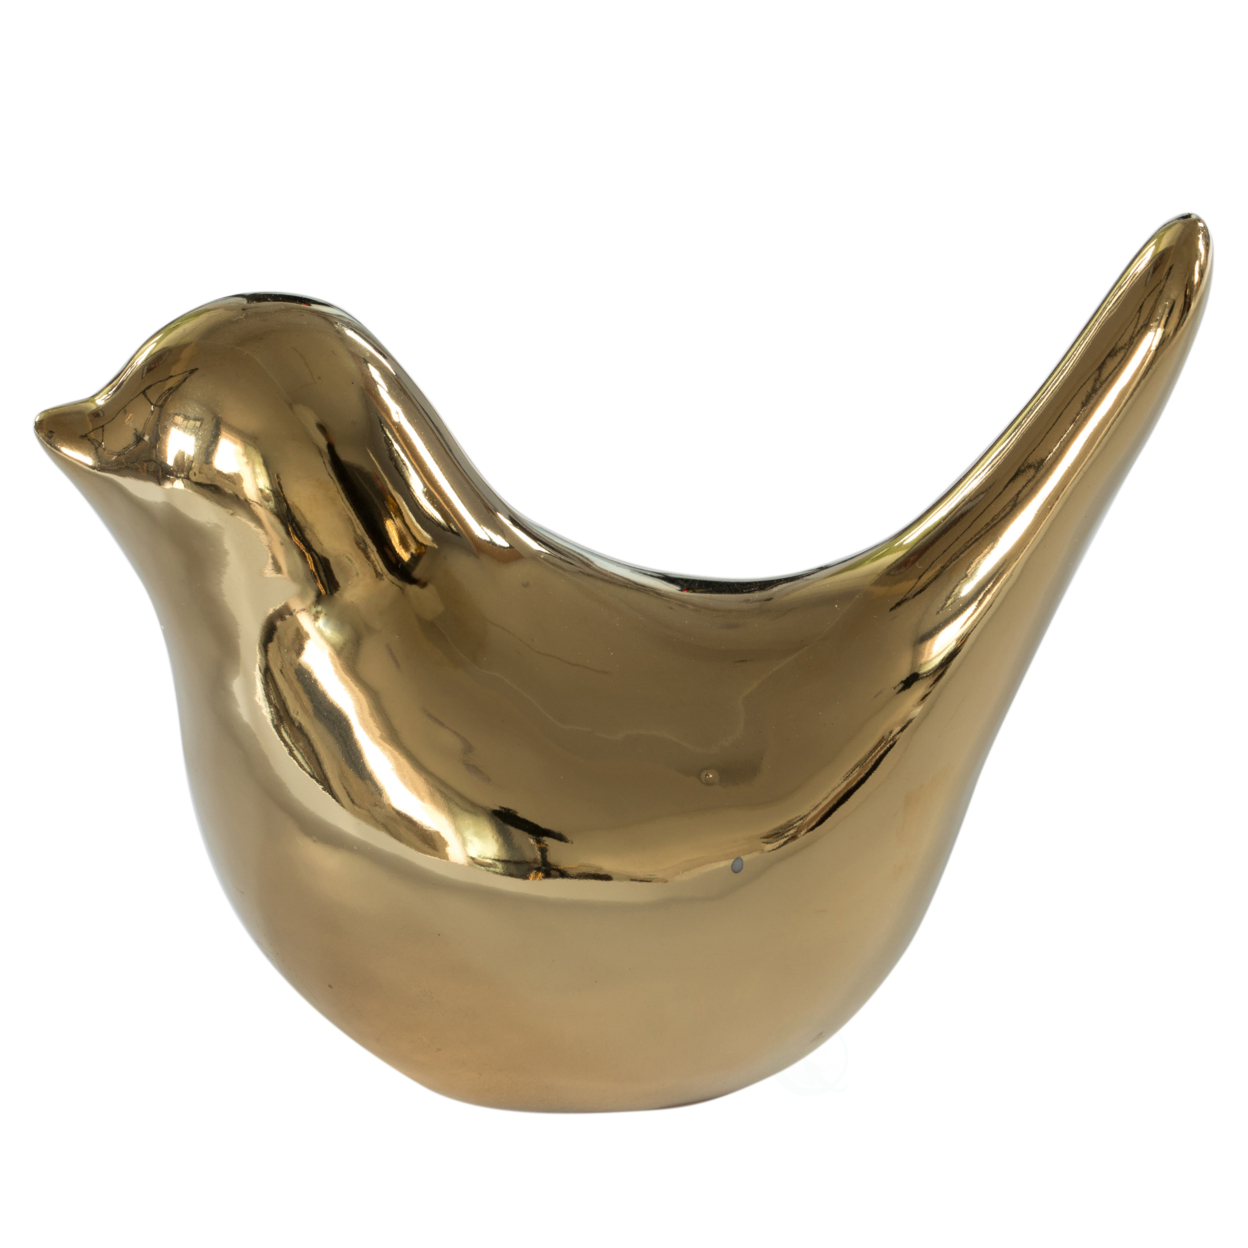 Modern Accent Table Decor Ceramic Gold Bird Figurine Statue Ornament